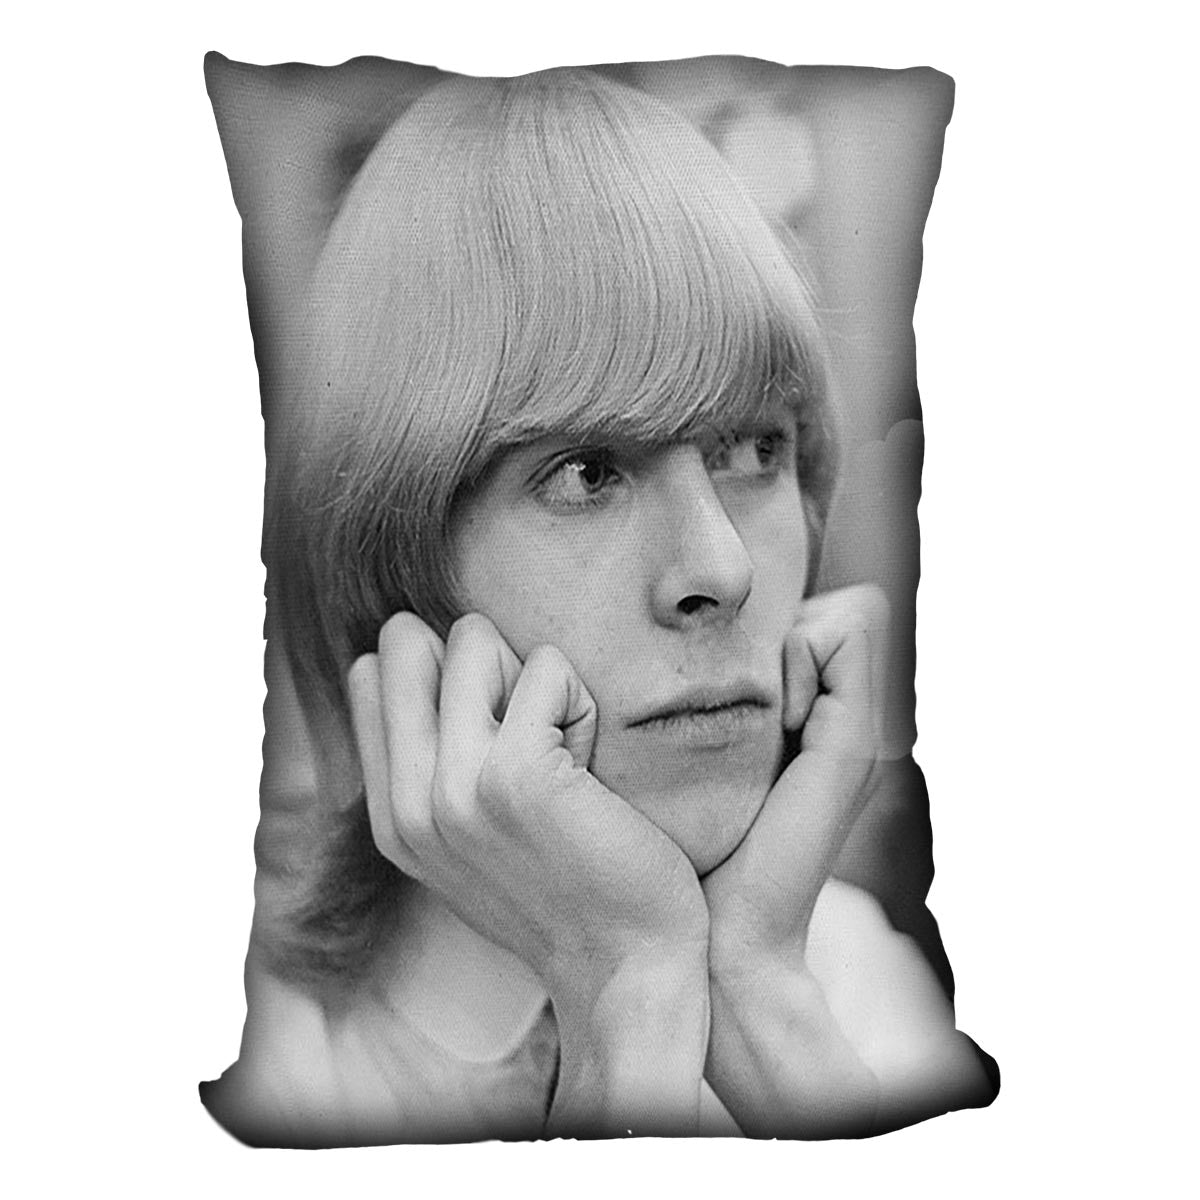 David Bowie with hair Cushion